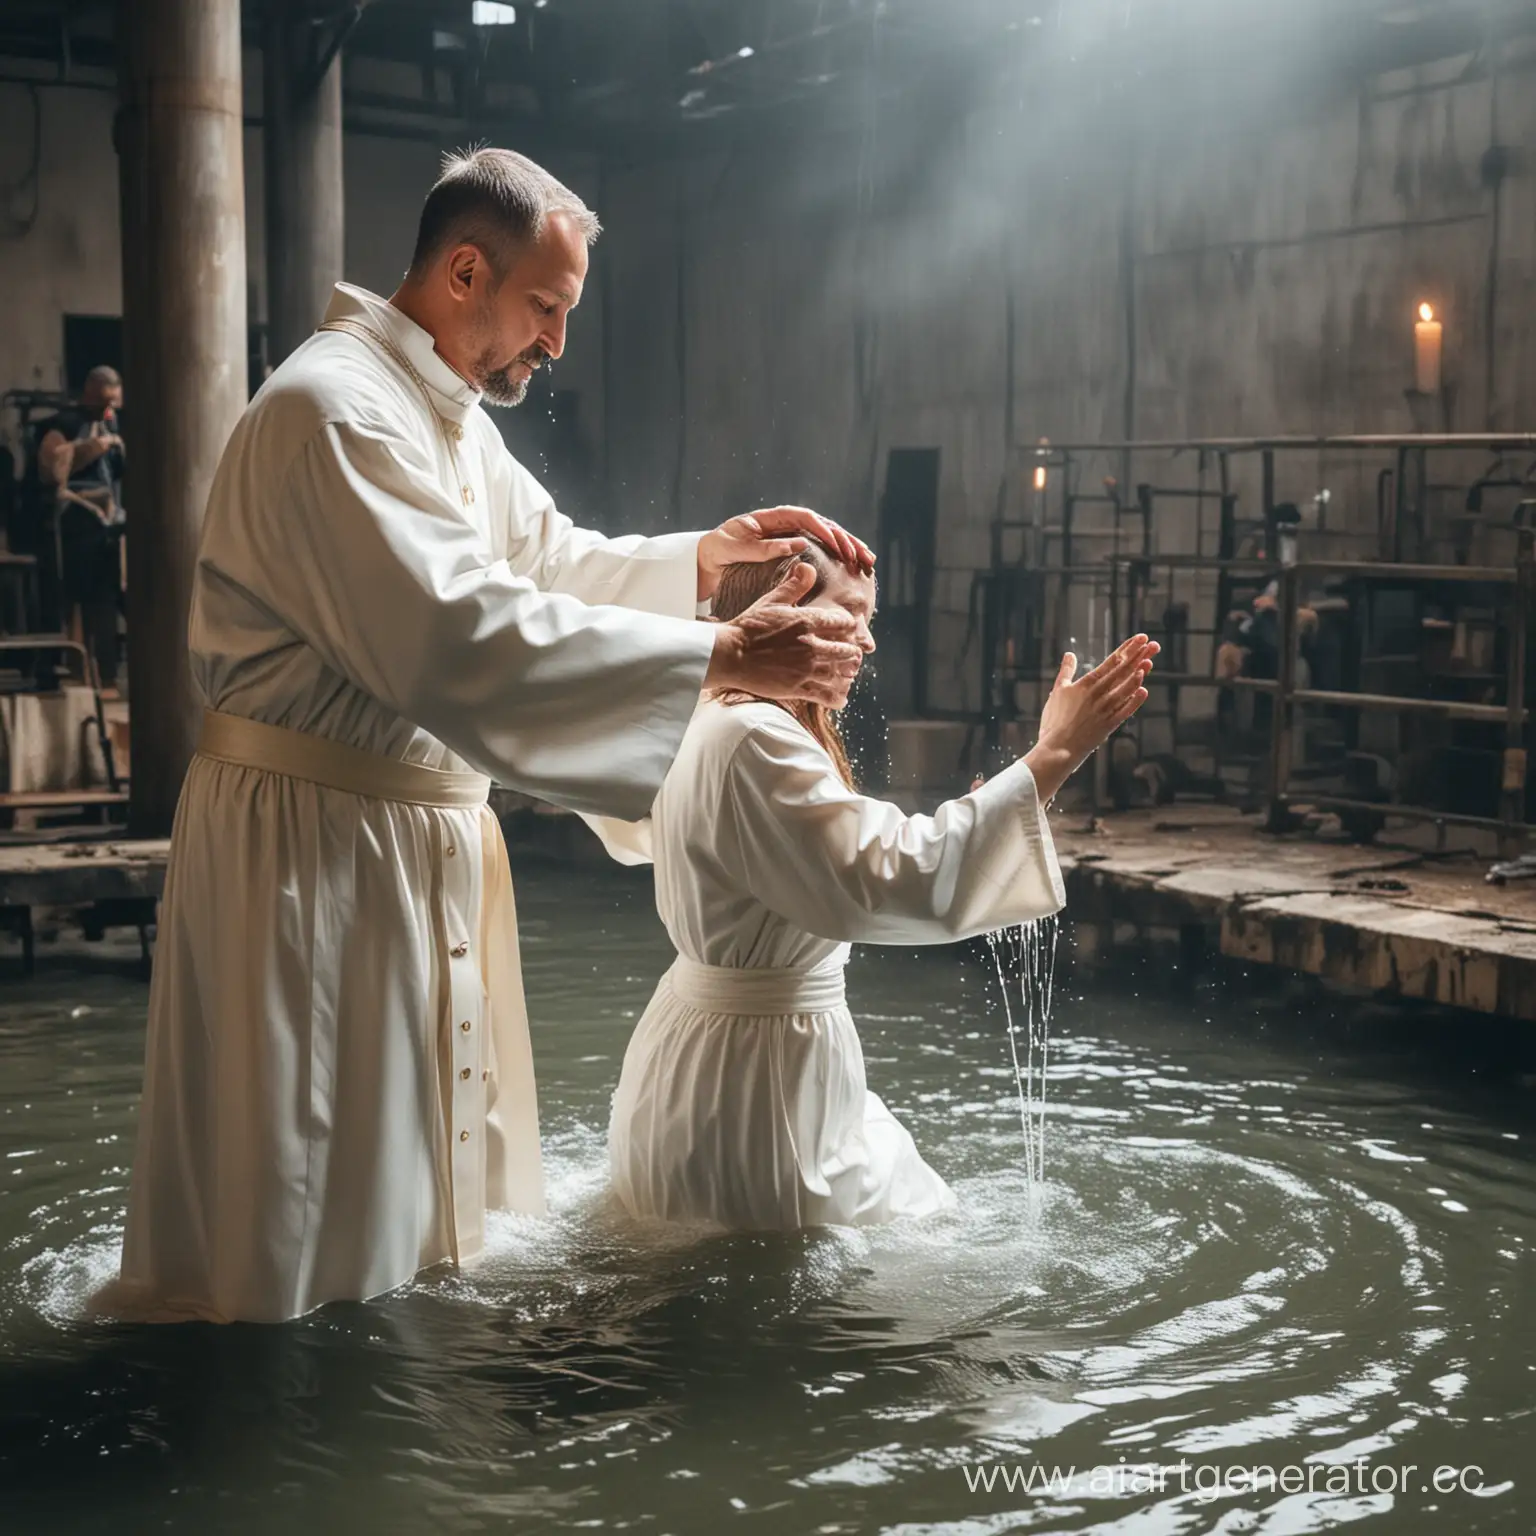 Батюшка крестит на заводе людей